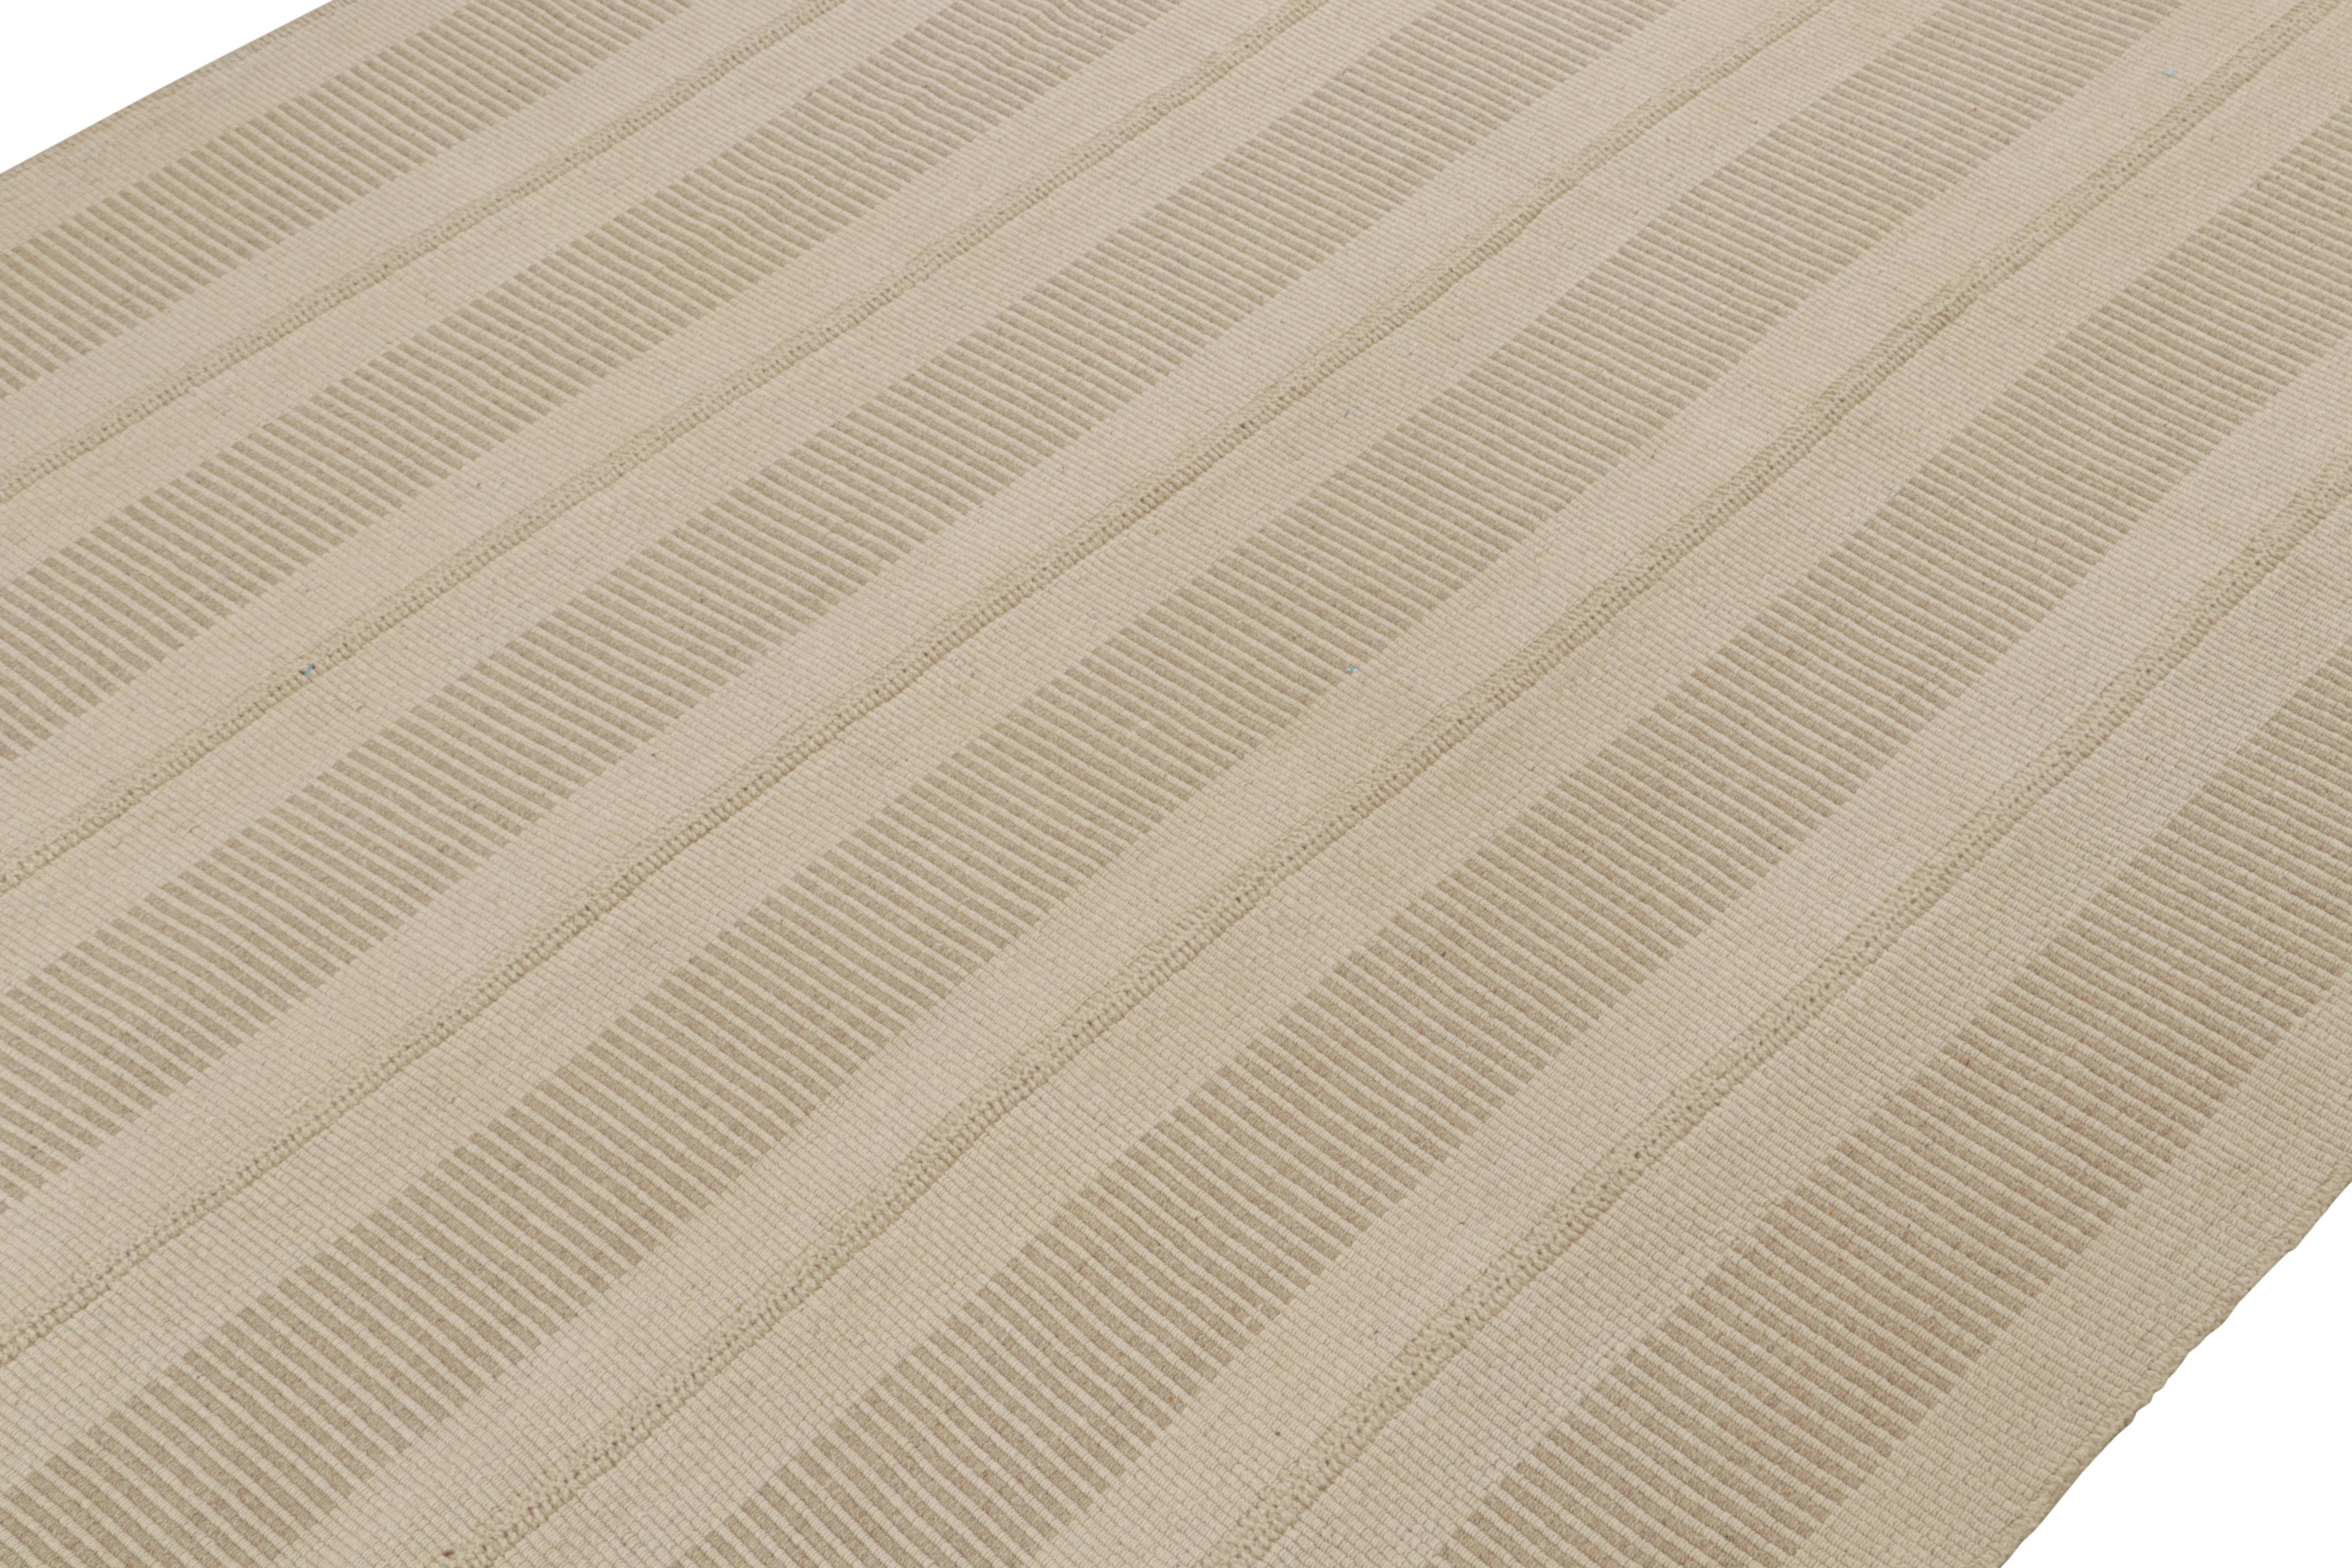 Handgewebter Woll-Kilim im Format 9x12 aus einer neuen, kühnen Linie zeitgenössischer Flachgewebe von Rug & Kilim.

Über das Design: 

Unser neuester 